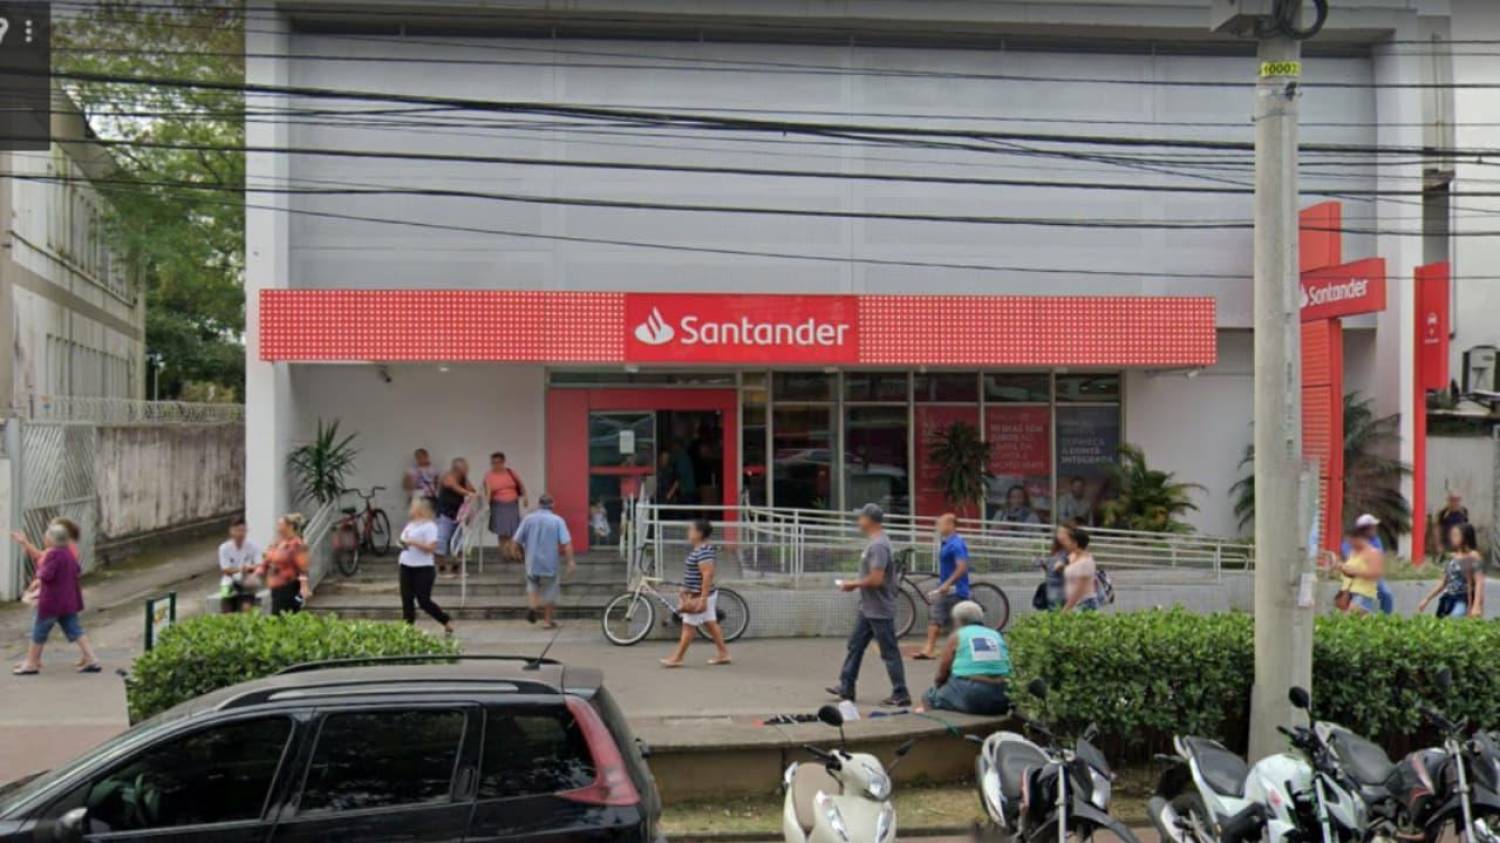 Santander prolonga jornada em algumas cidades da Baixada, segundo denúncias